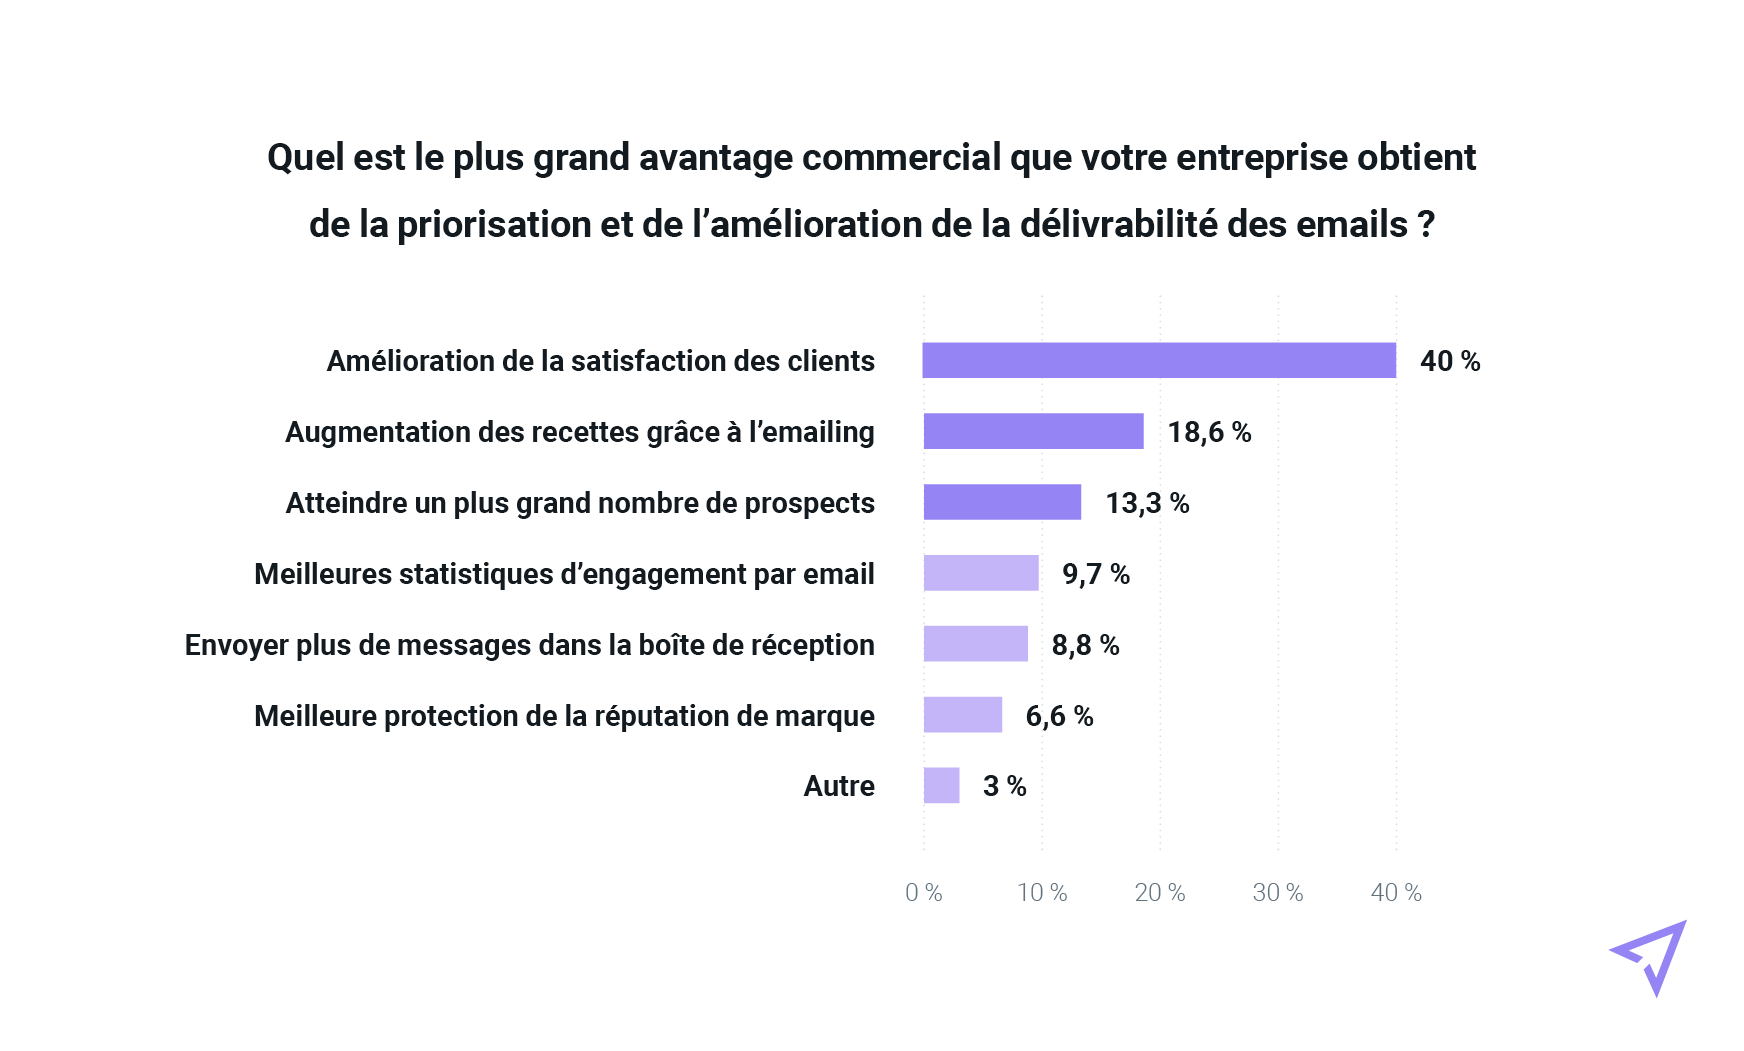 Graphique des avantages de la priorité donnée à la délivrabilité des emails